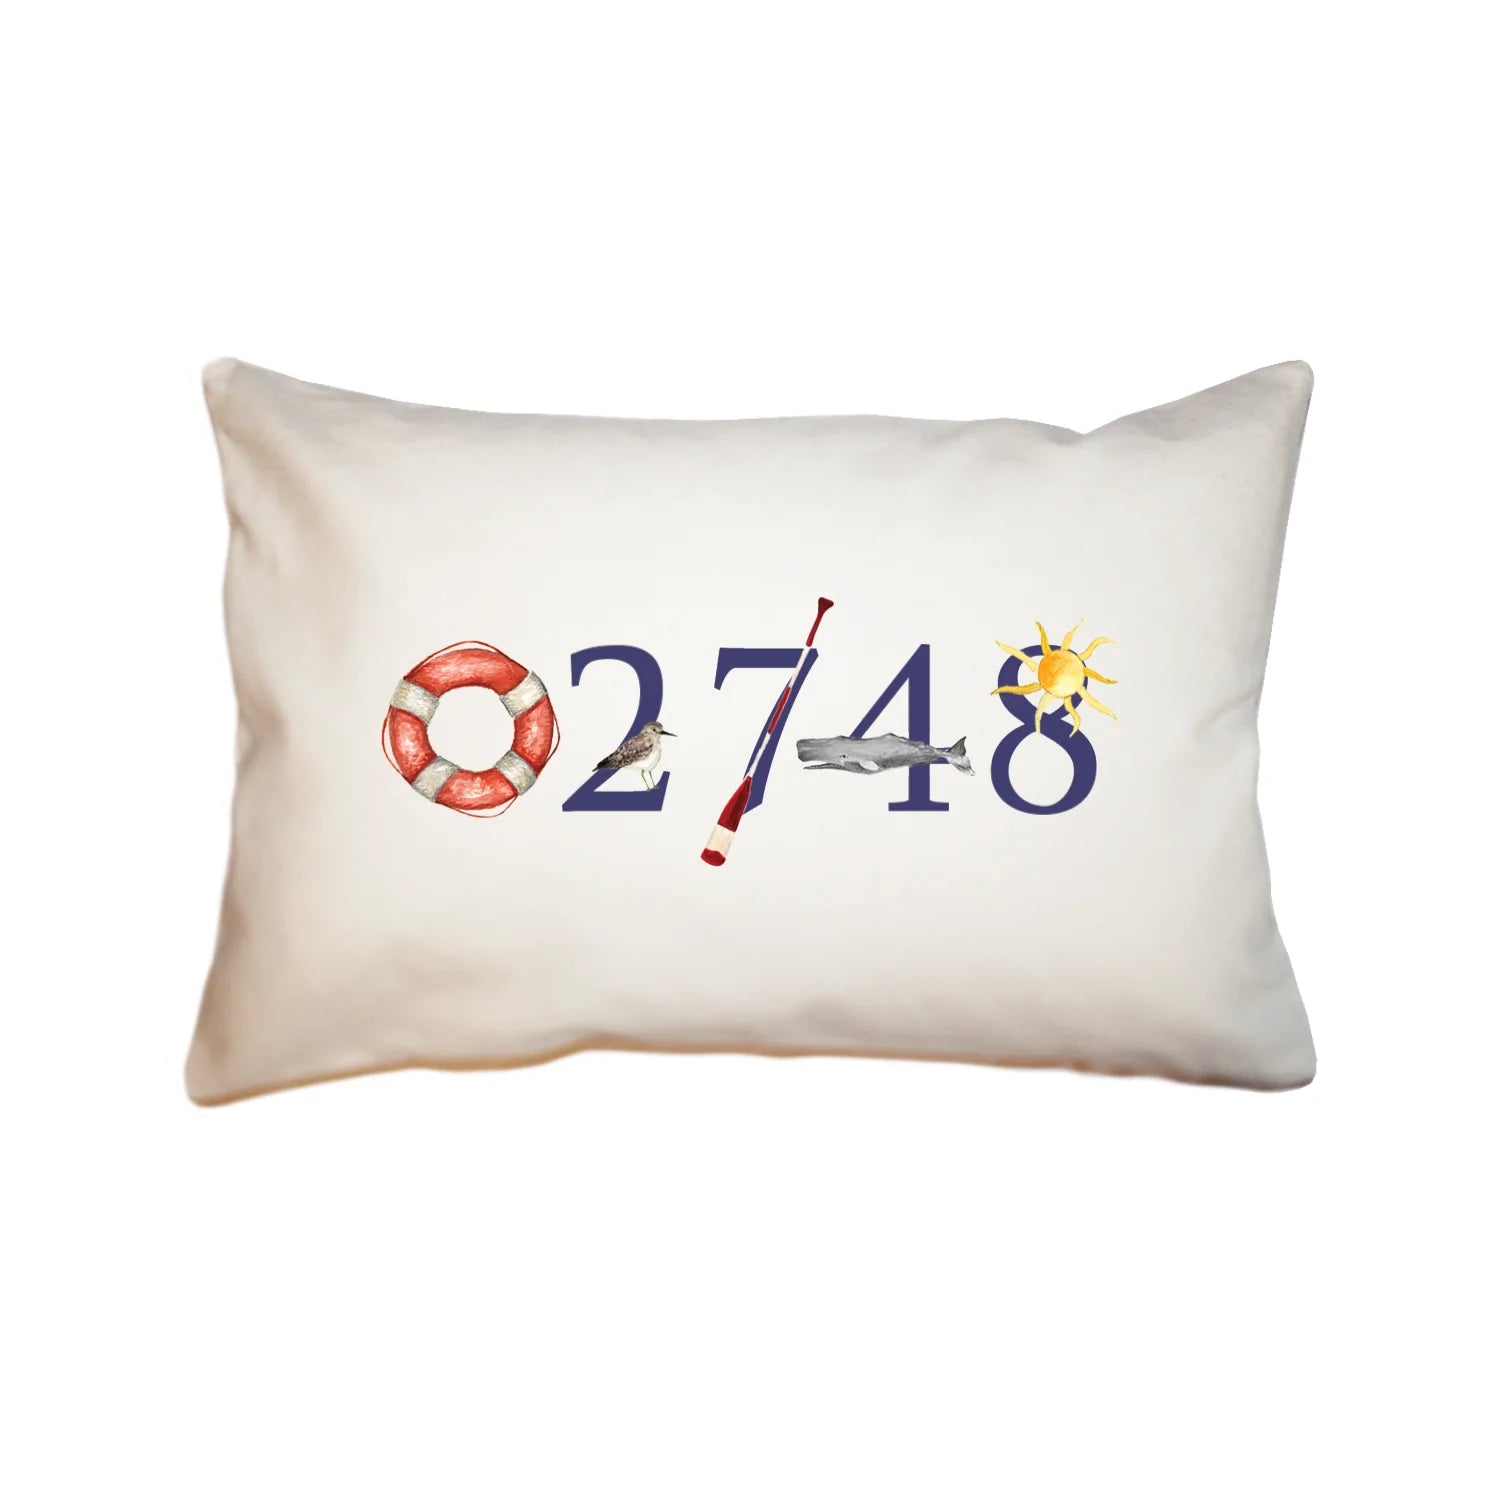 02748 dartmouth zip code large rectangle pillow